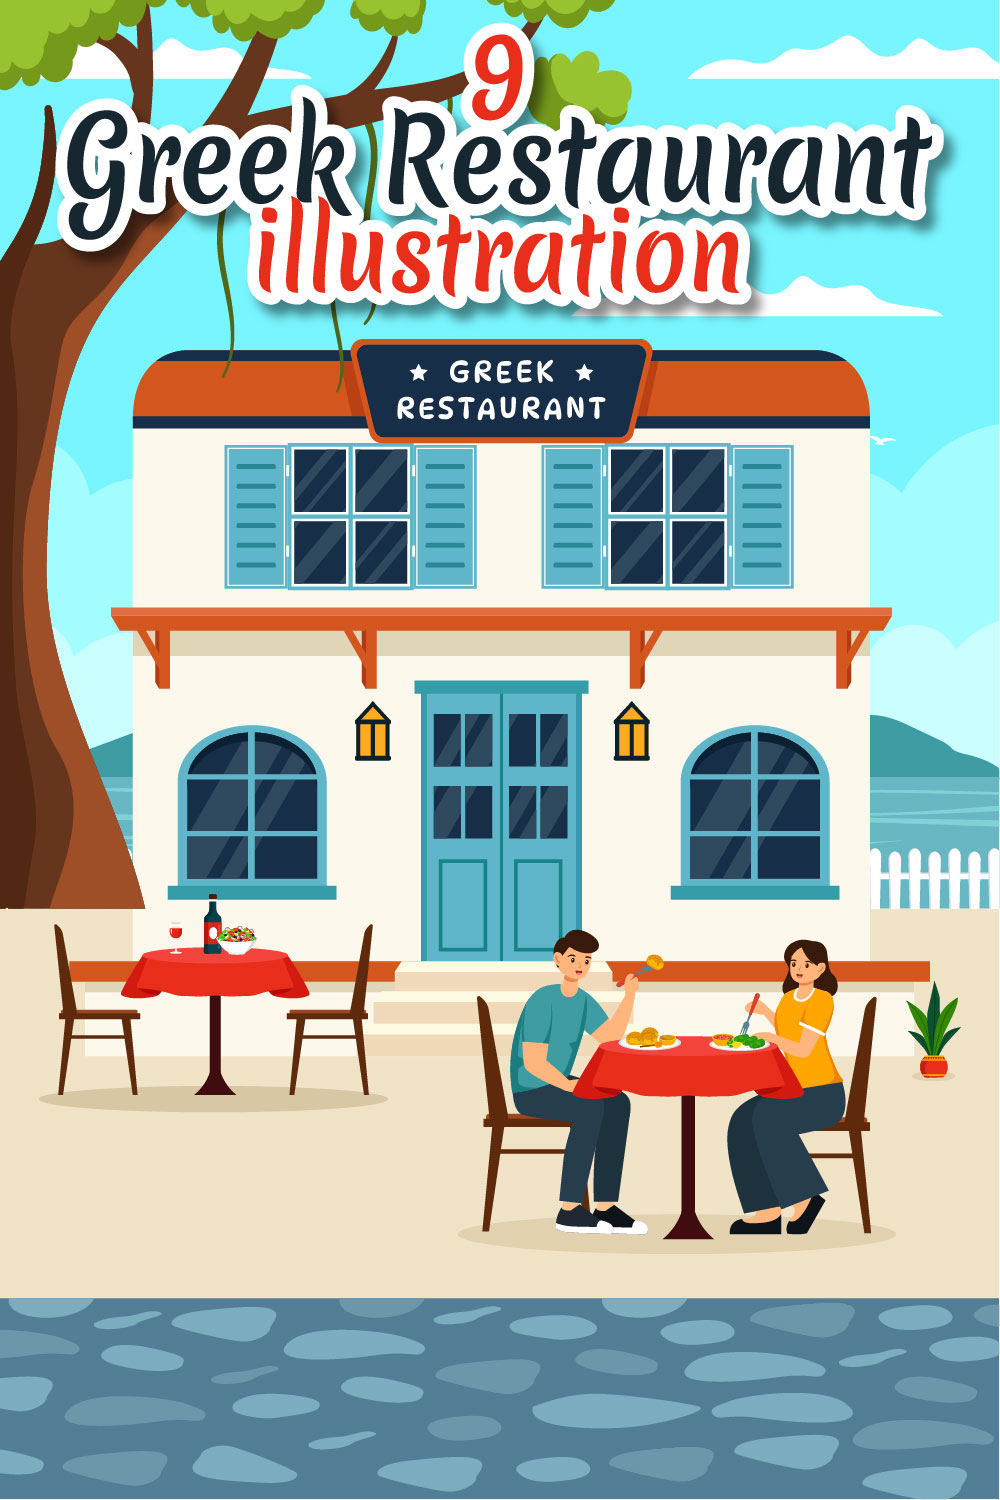 9 Greek Food Restaurant Illustration pinterest preview image.